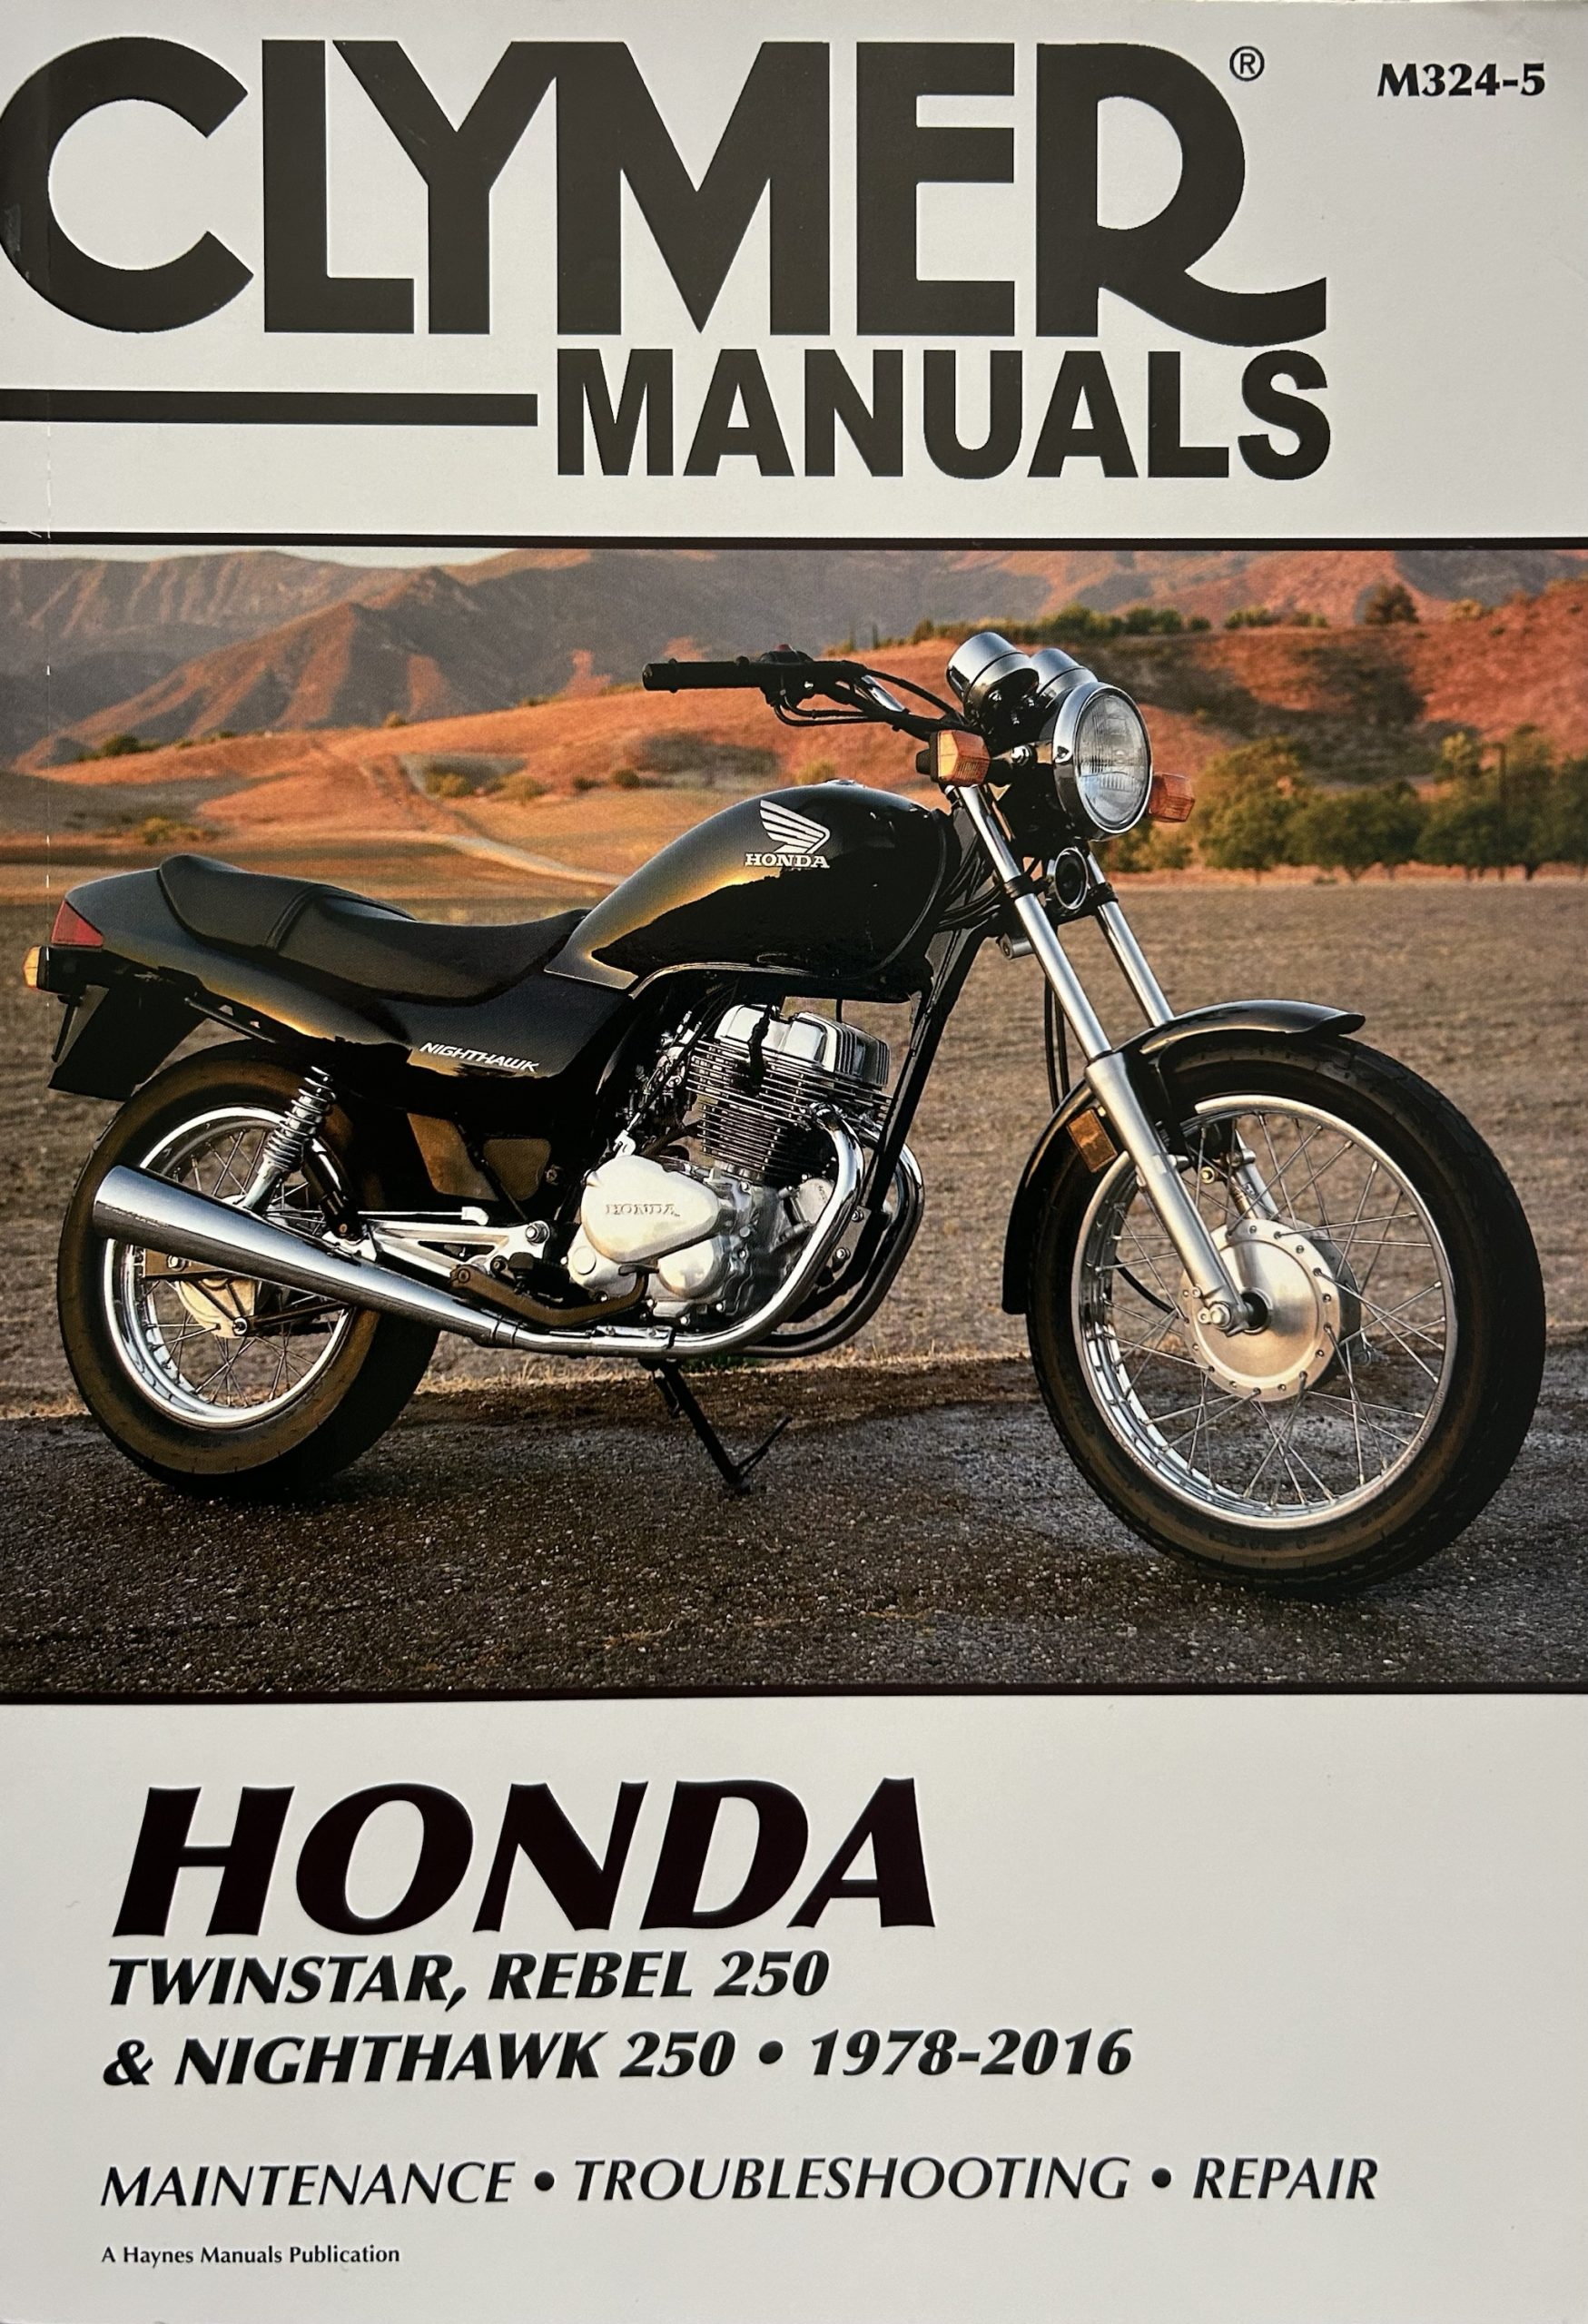 Honda Twinstar, Rebel 250 & Nighthawk 250: 1978-2016 Clymer Manual